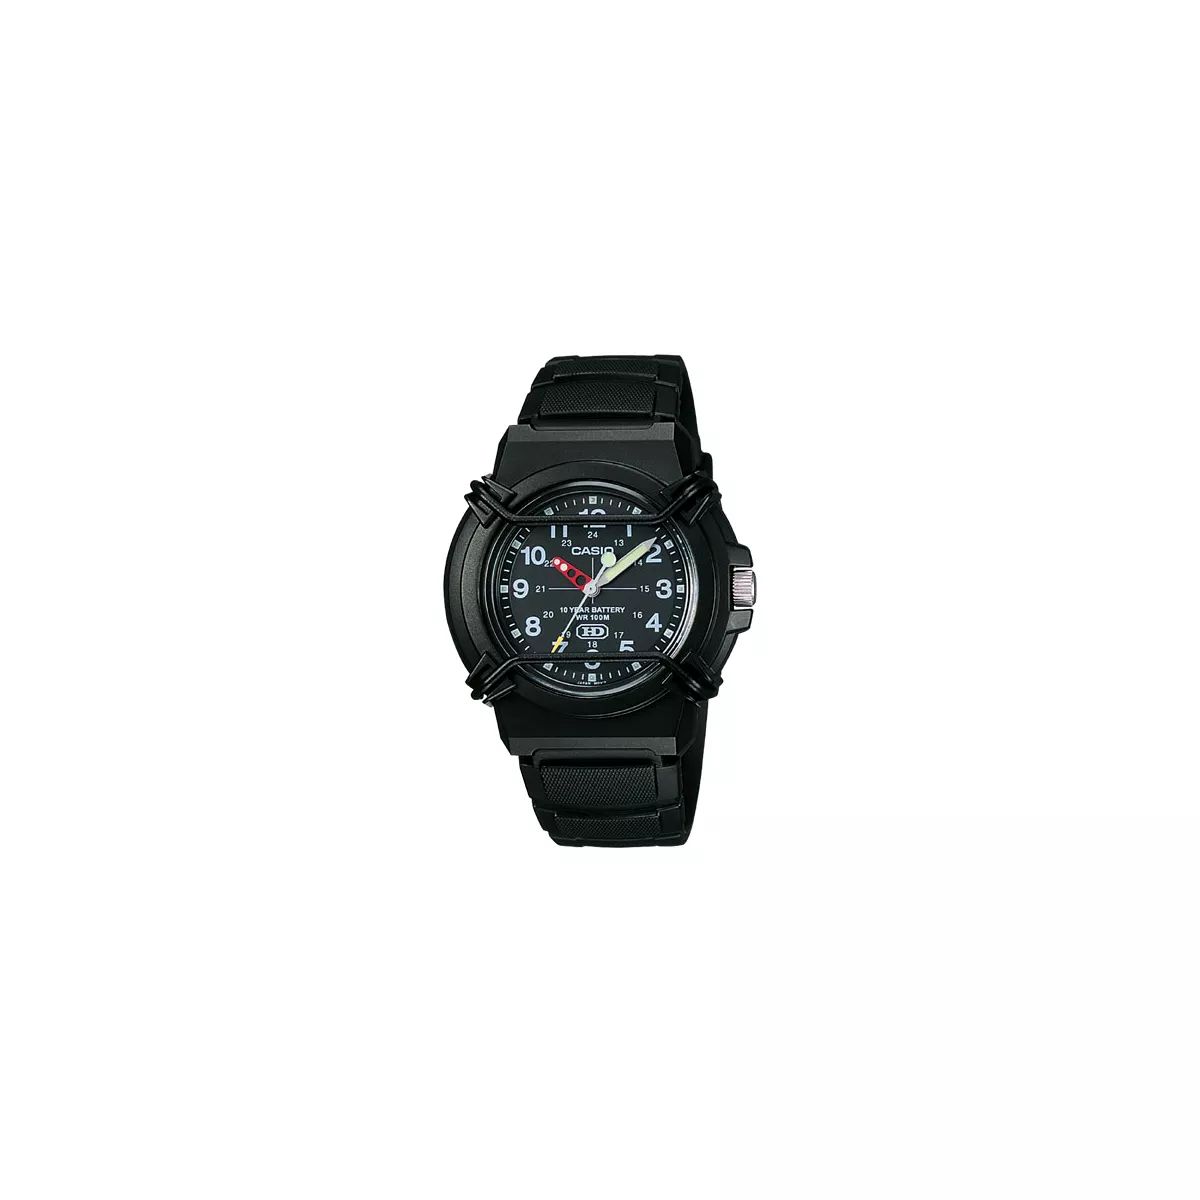 Casio Men's Analog Sport Watch - Black (HDA600B-1BV) | Target